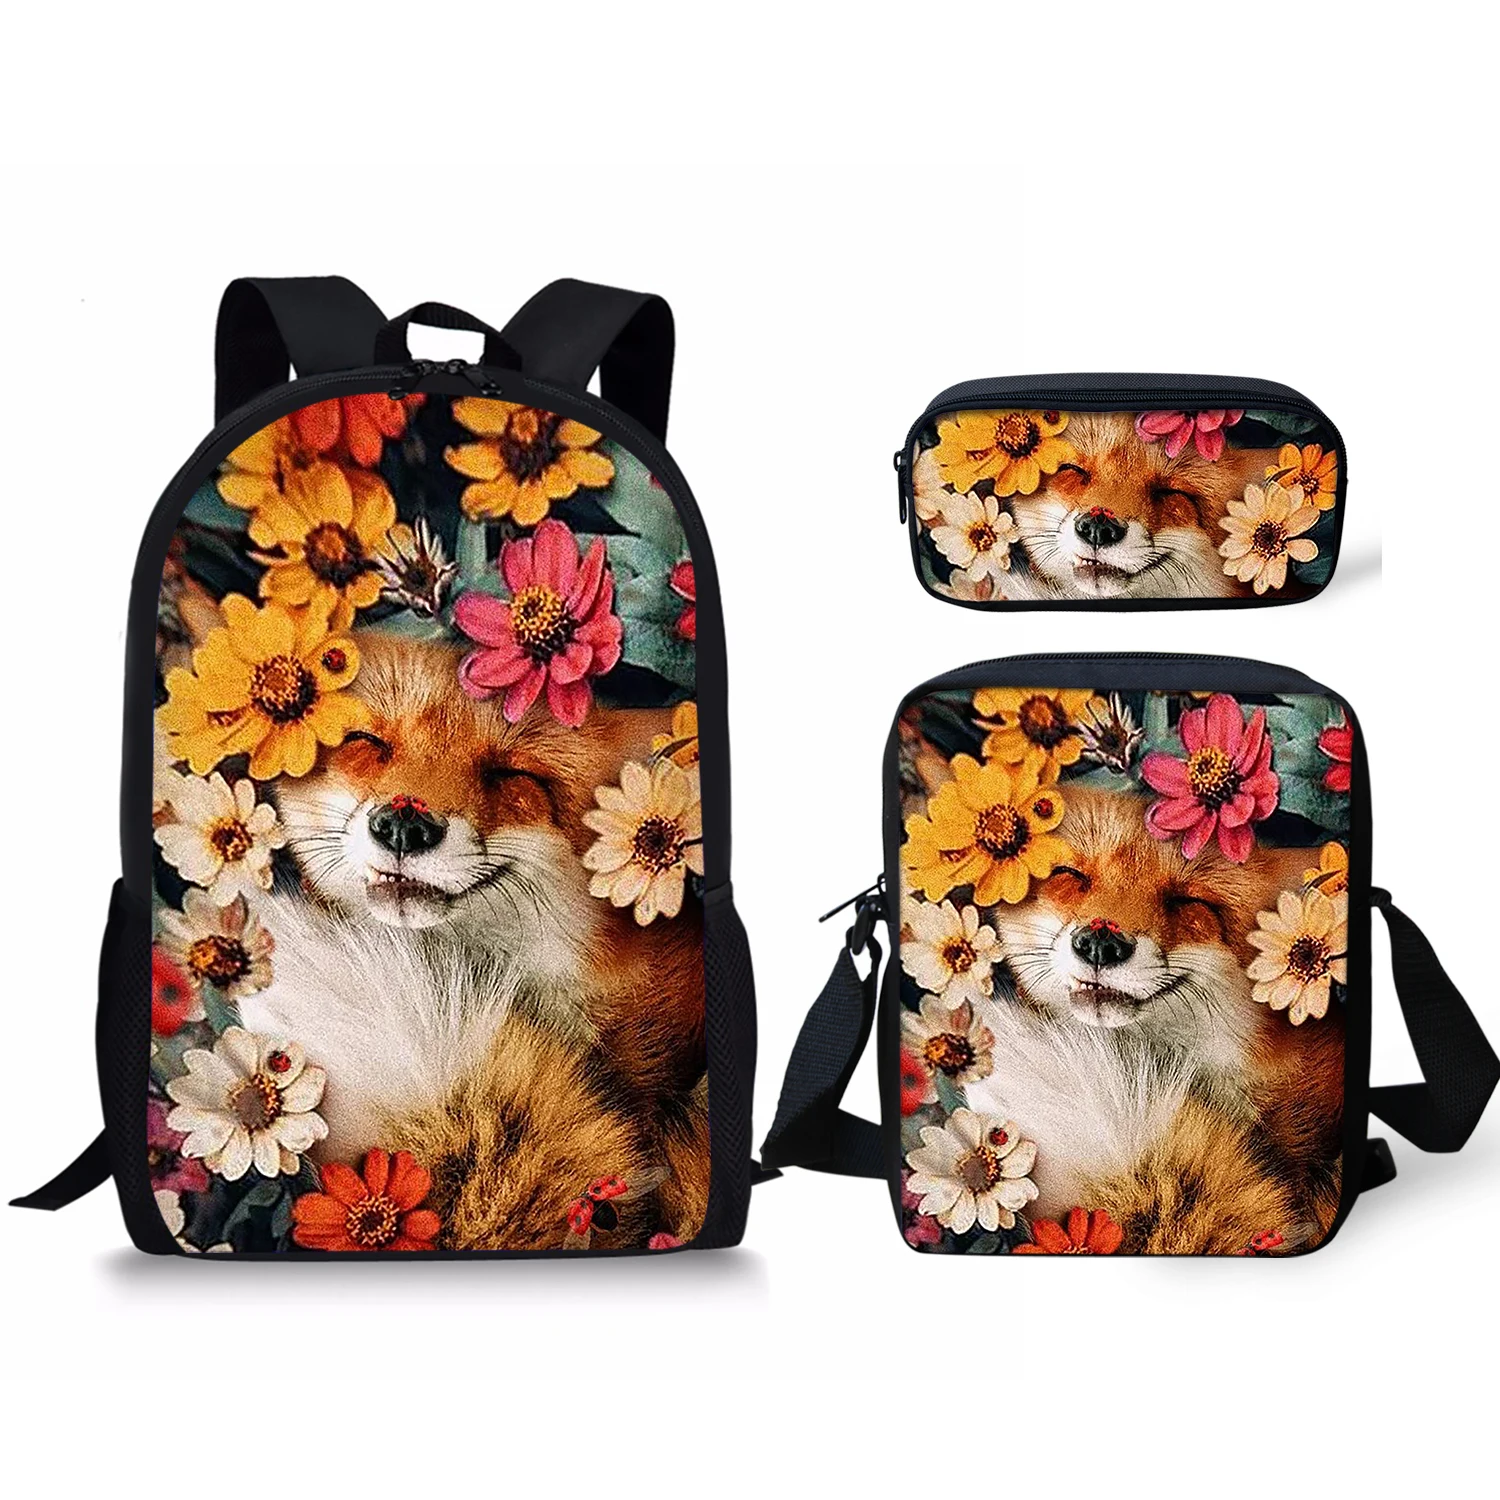 

Набор школьных сумок для мальчиков и девочек, легкий детский рюкзак с милым рисунком лисы и цветов, сумка для книг, ранец на плечо